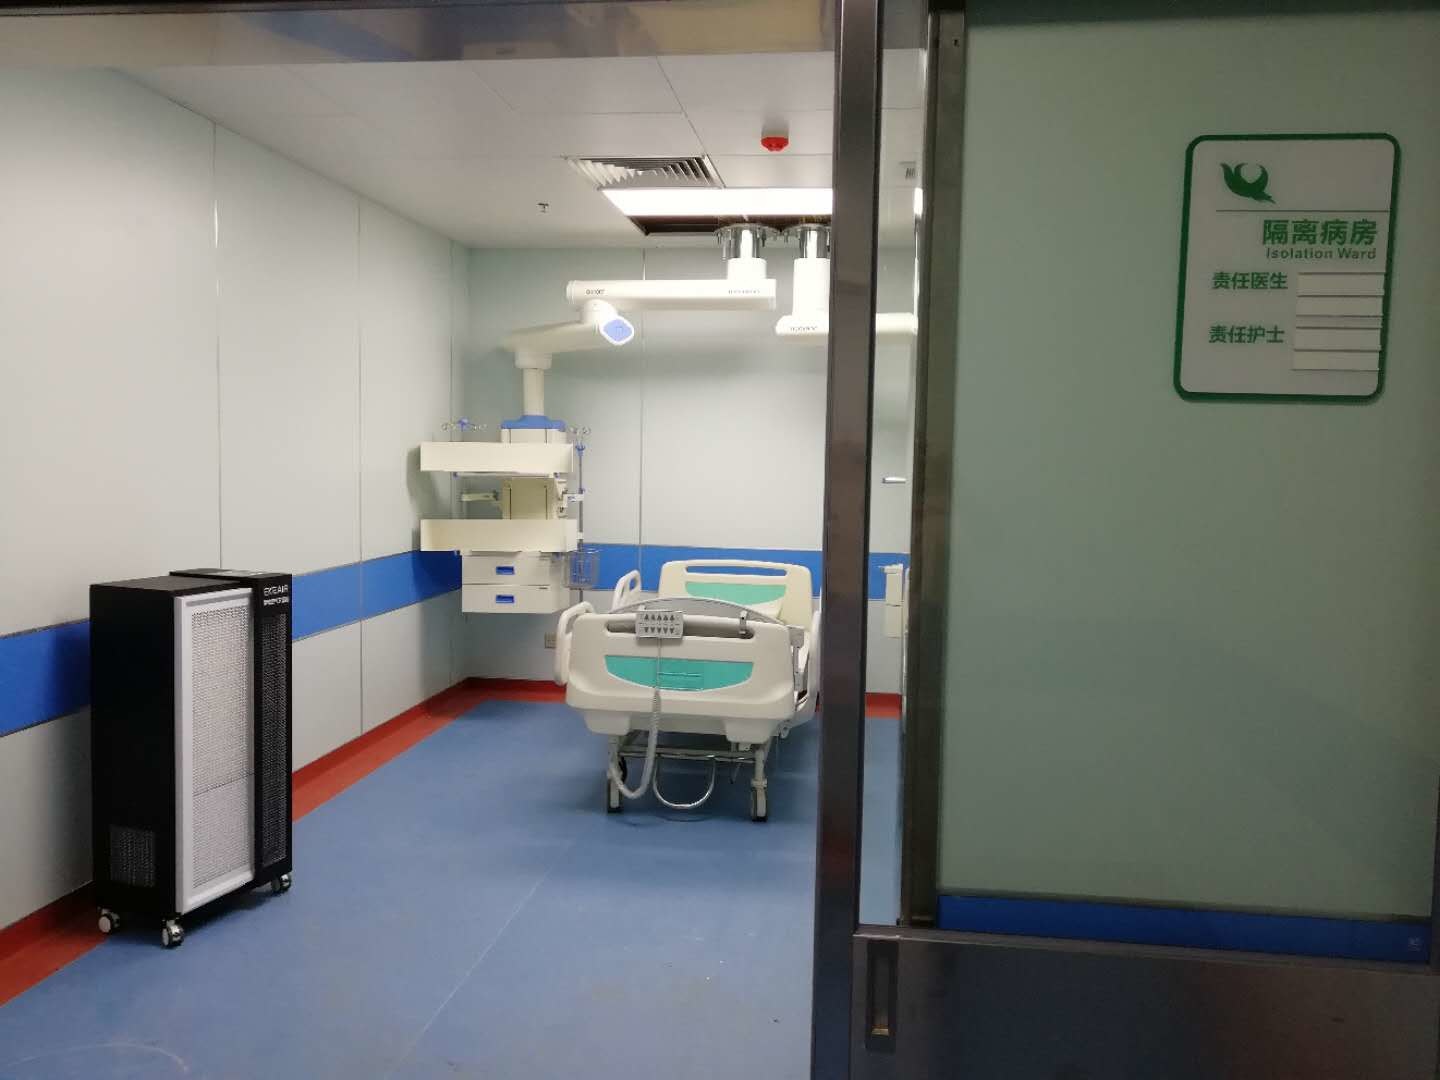 mais recente caso da empresa sobre Terreno novo, quarto hospital da universidade médica de Anhui